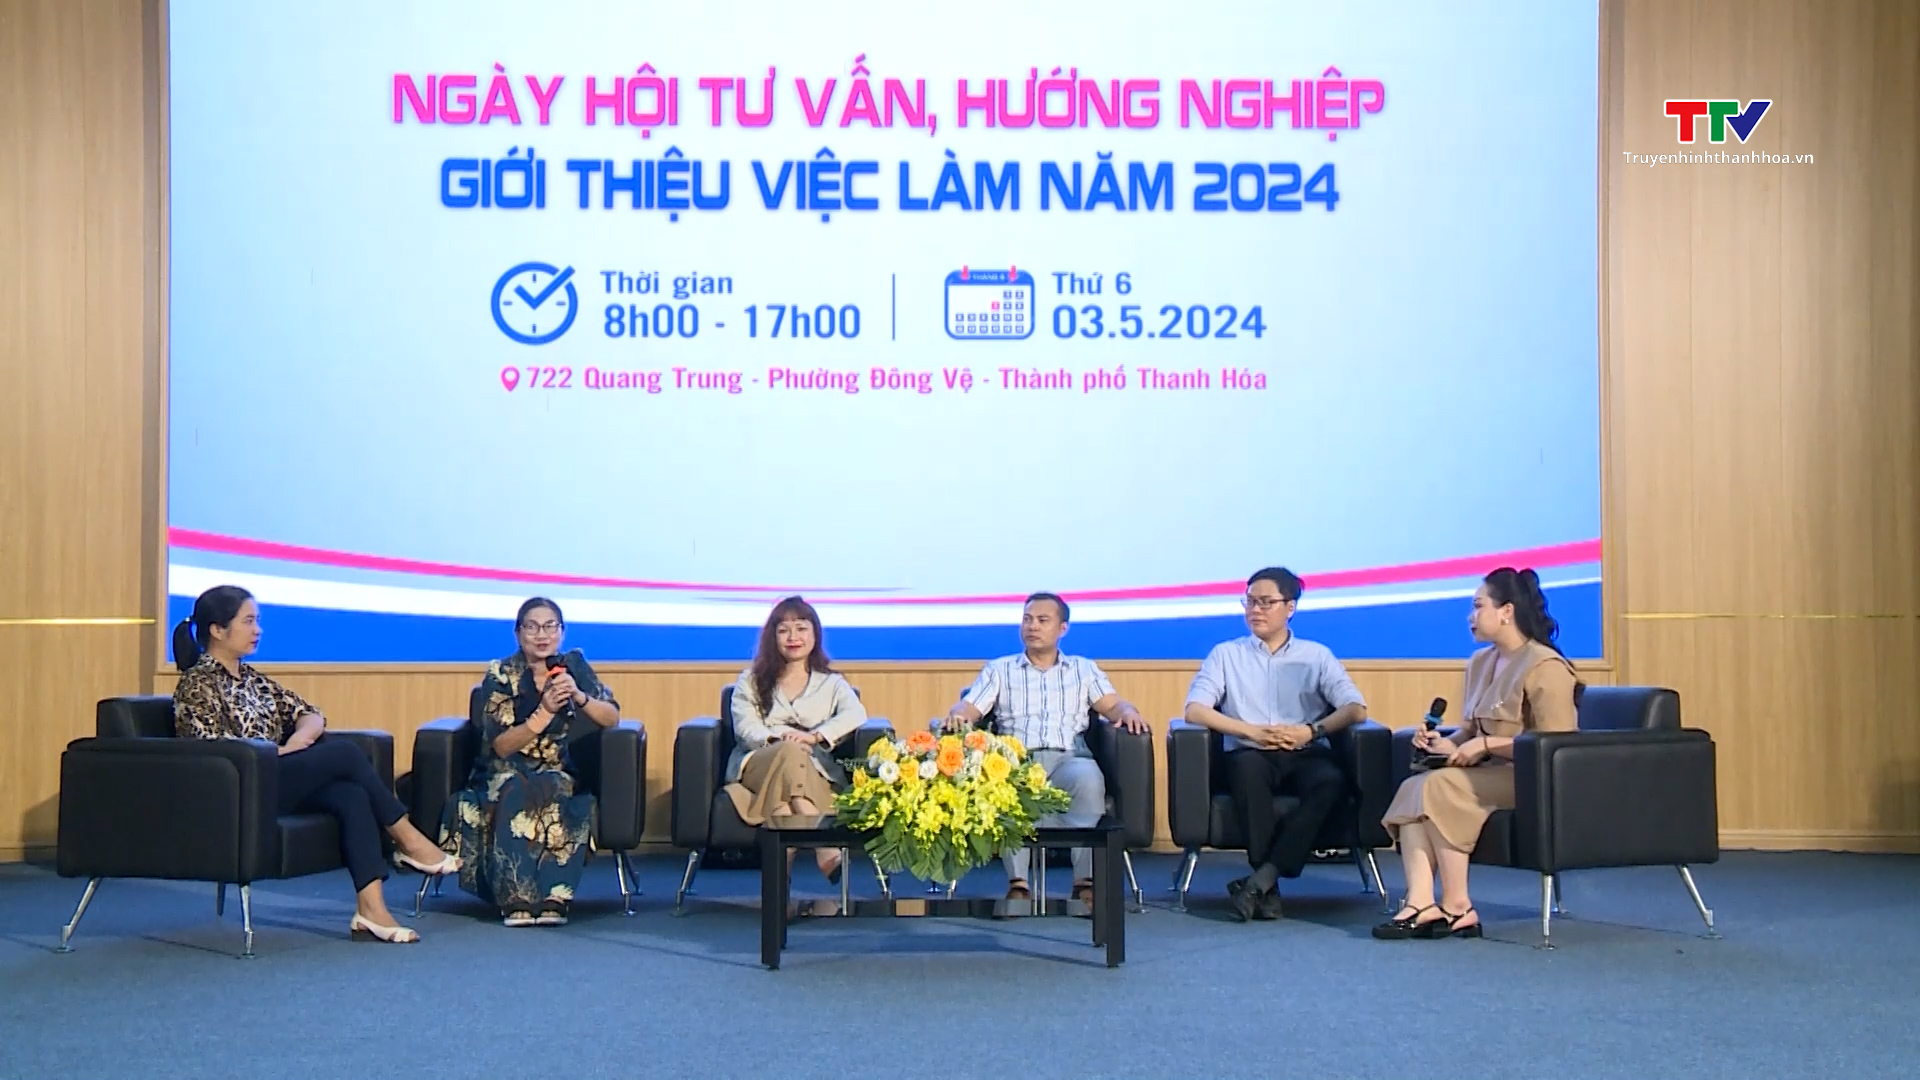 Phân hiệu Đại học Y Hà Nội tại Thanh Hóa tổ chức Ngày hội tư vấn, hướng nghiệp và giới thiệu việc làm - Ảnh 1.